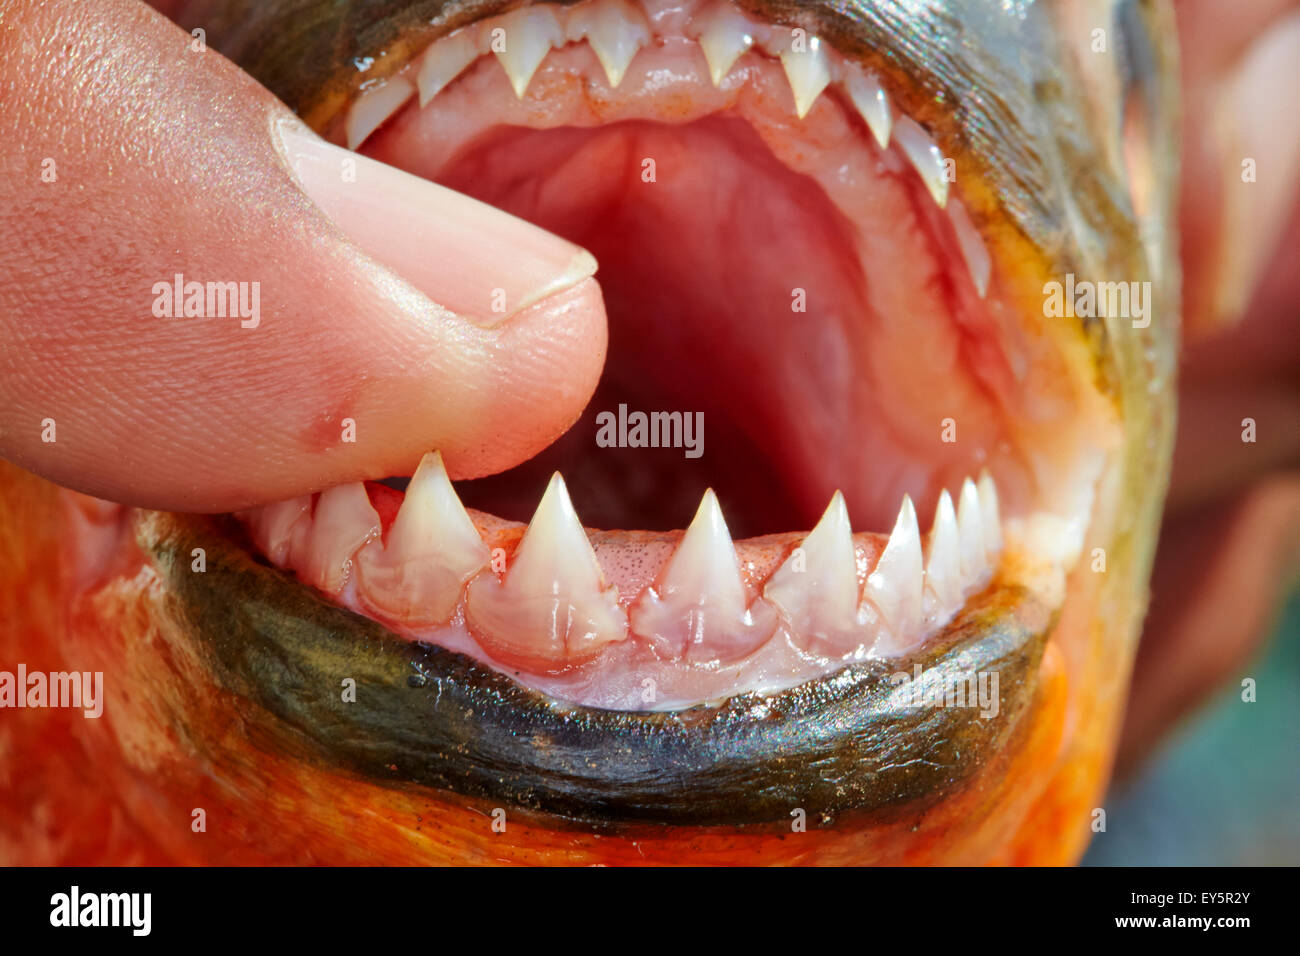 Denti da piranha immagini e fotografie stock ad alta risoluzione - Alamy